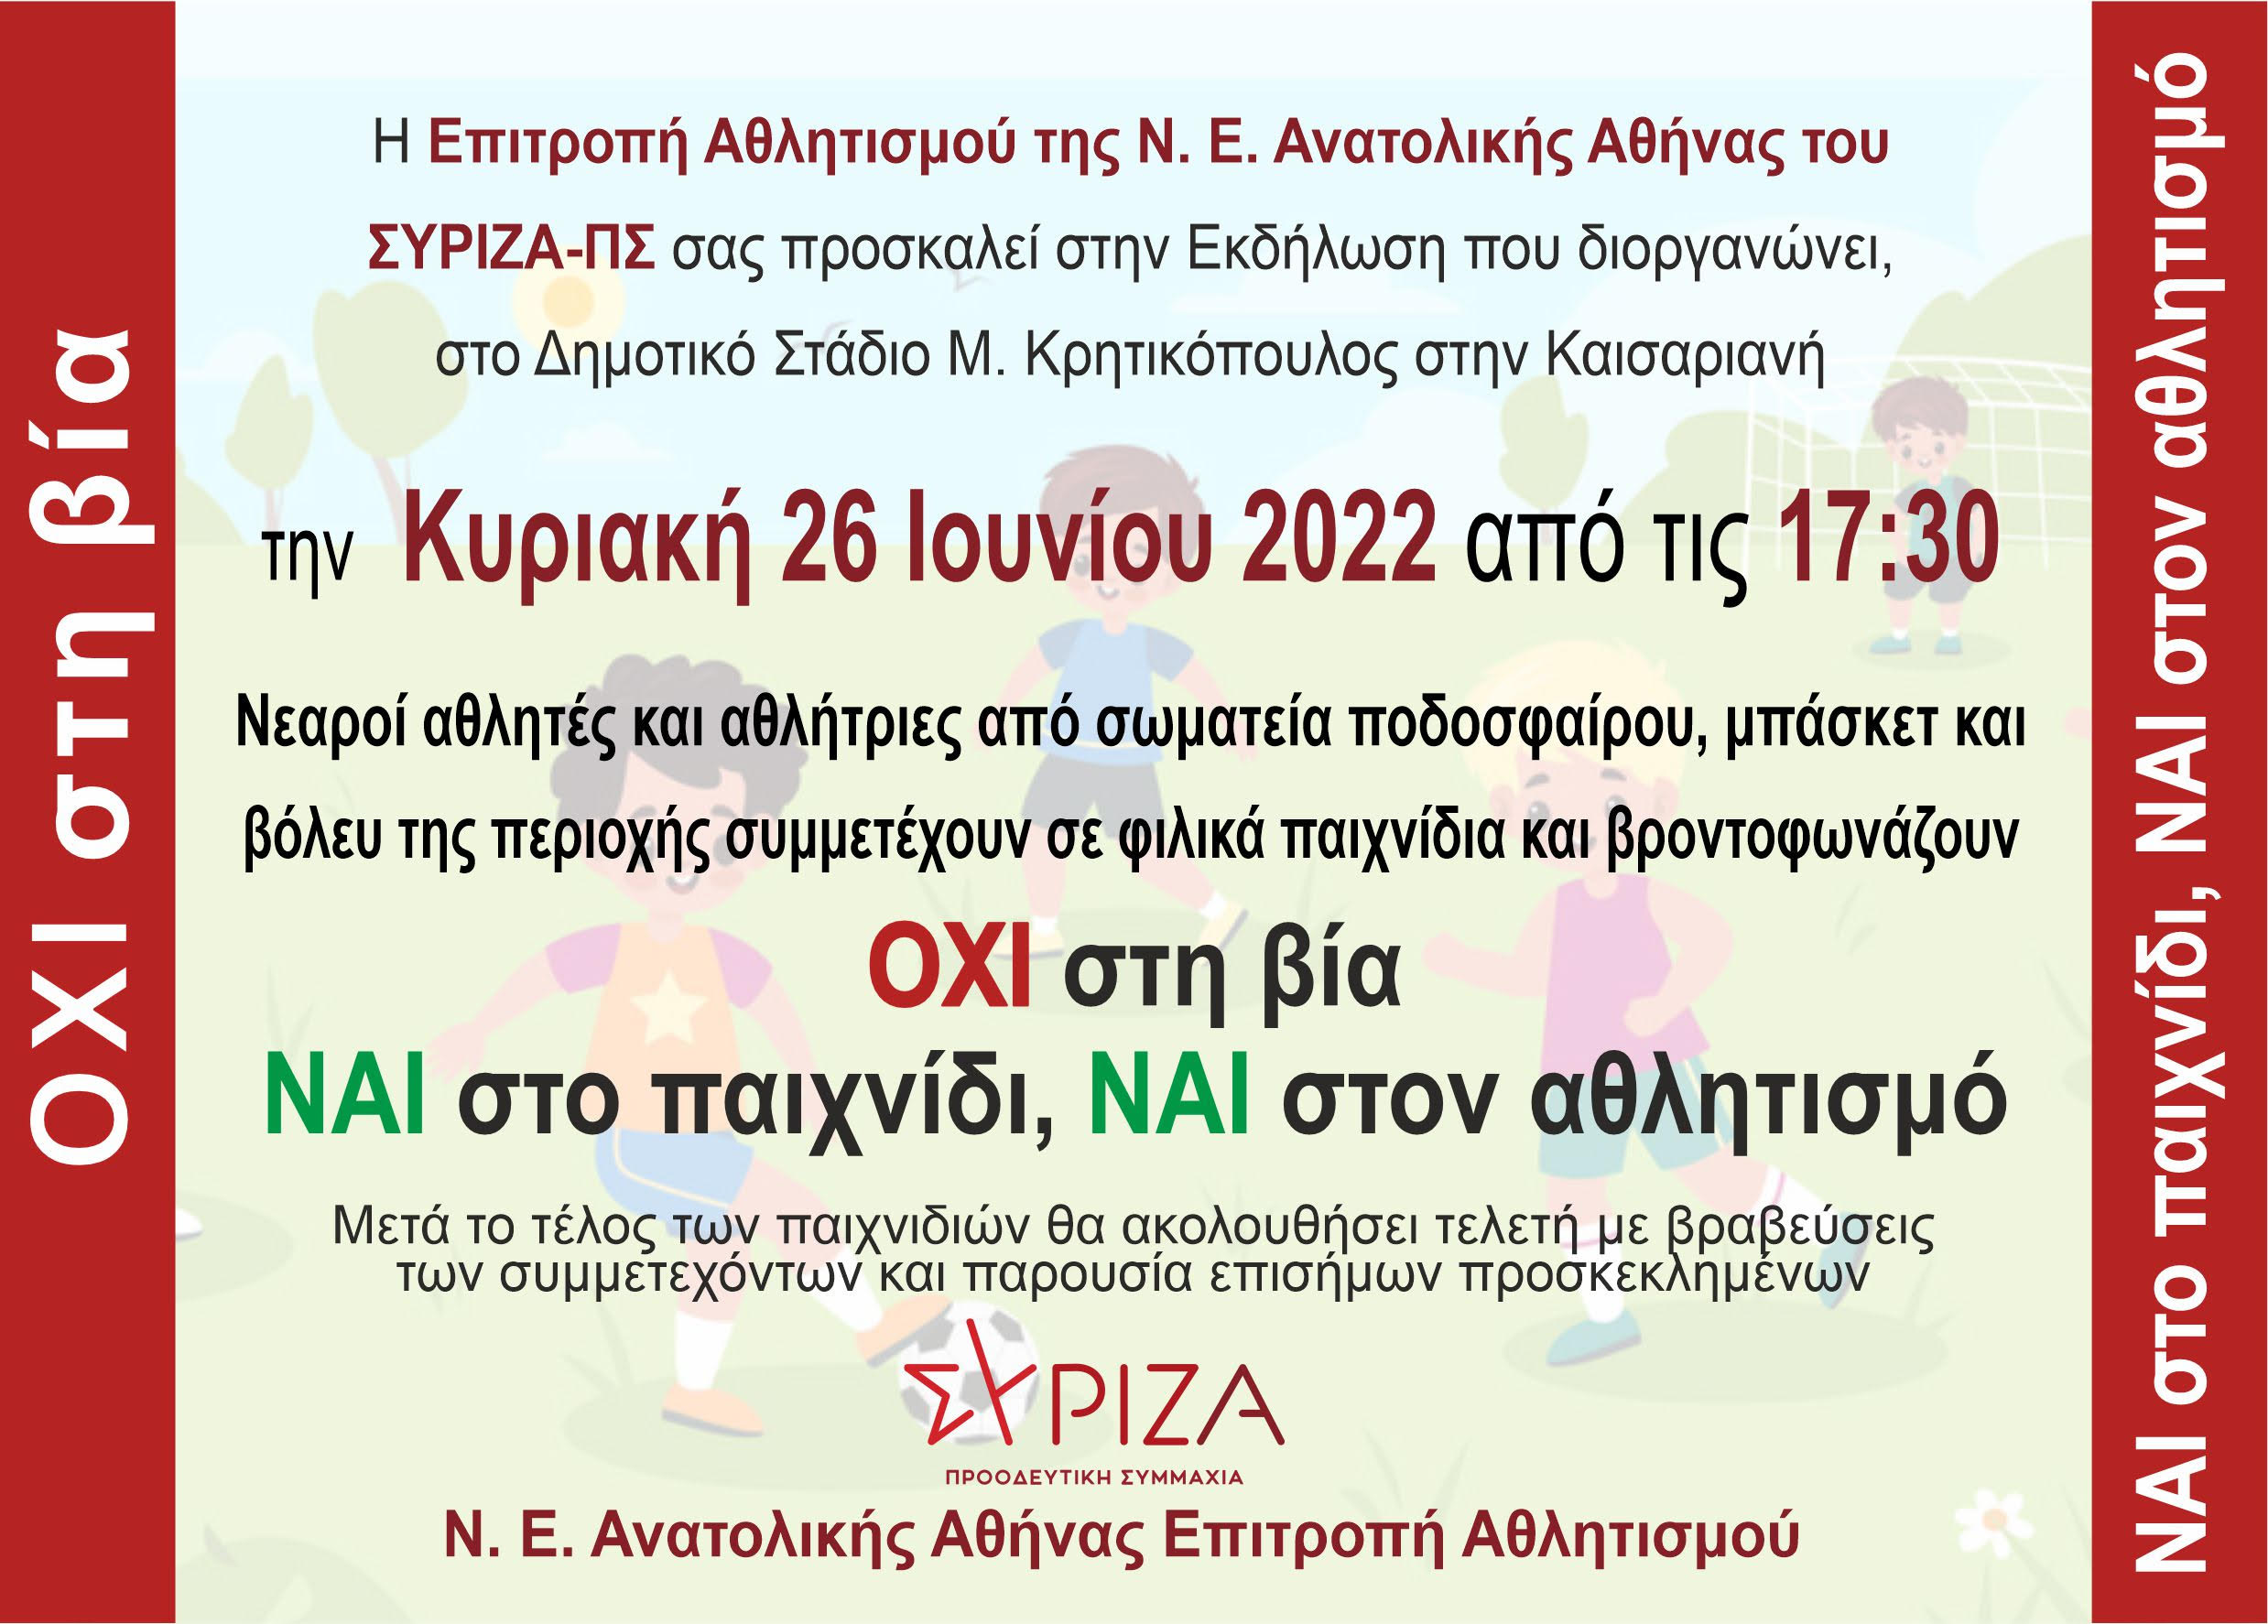 Εκδήλωση της ΝΕ Ανατολικής Αθήνας - Επιτροπή Αθλητισμού: Όχι στη βία, Ναι στο παιχνίδι και τον αθλητισμό